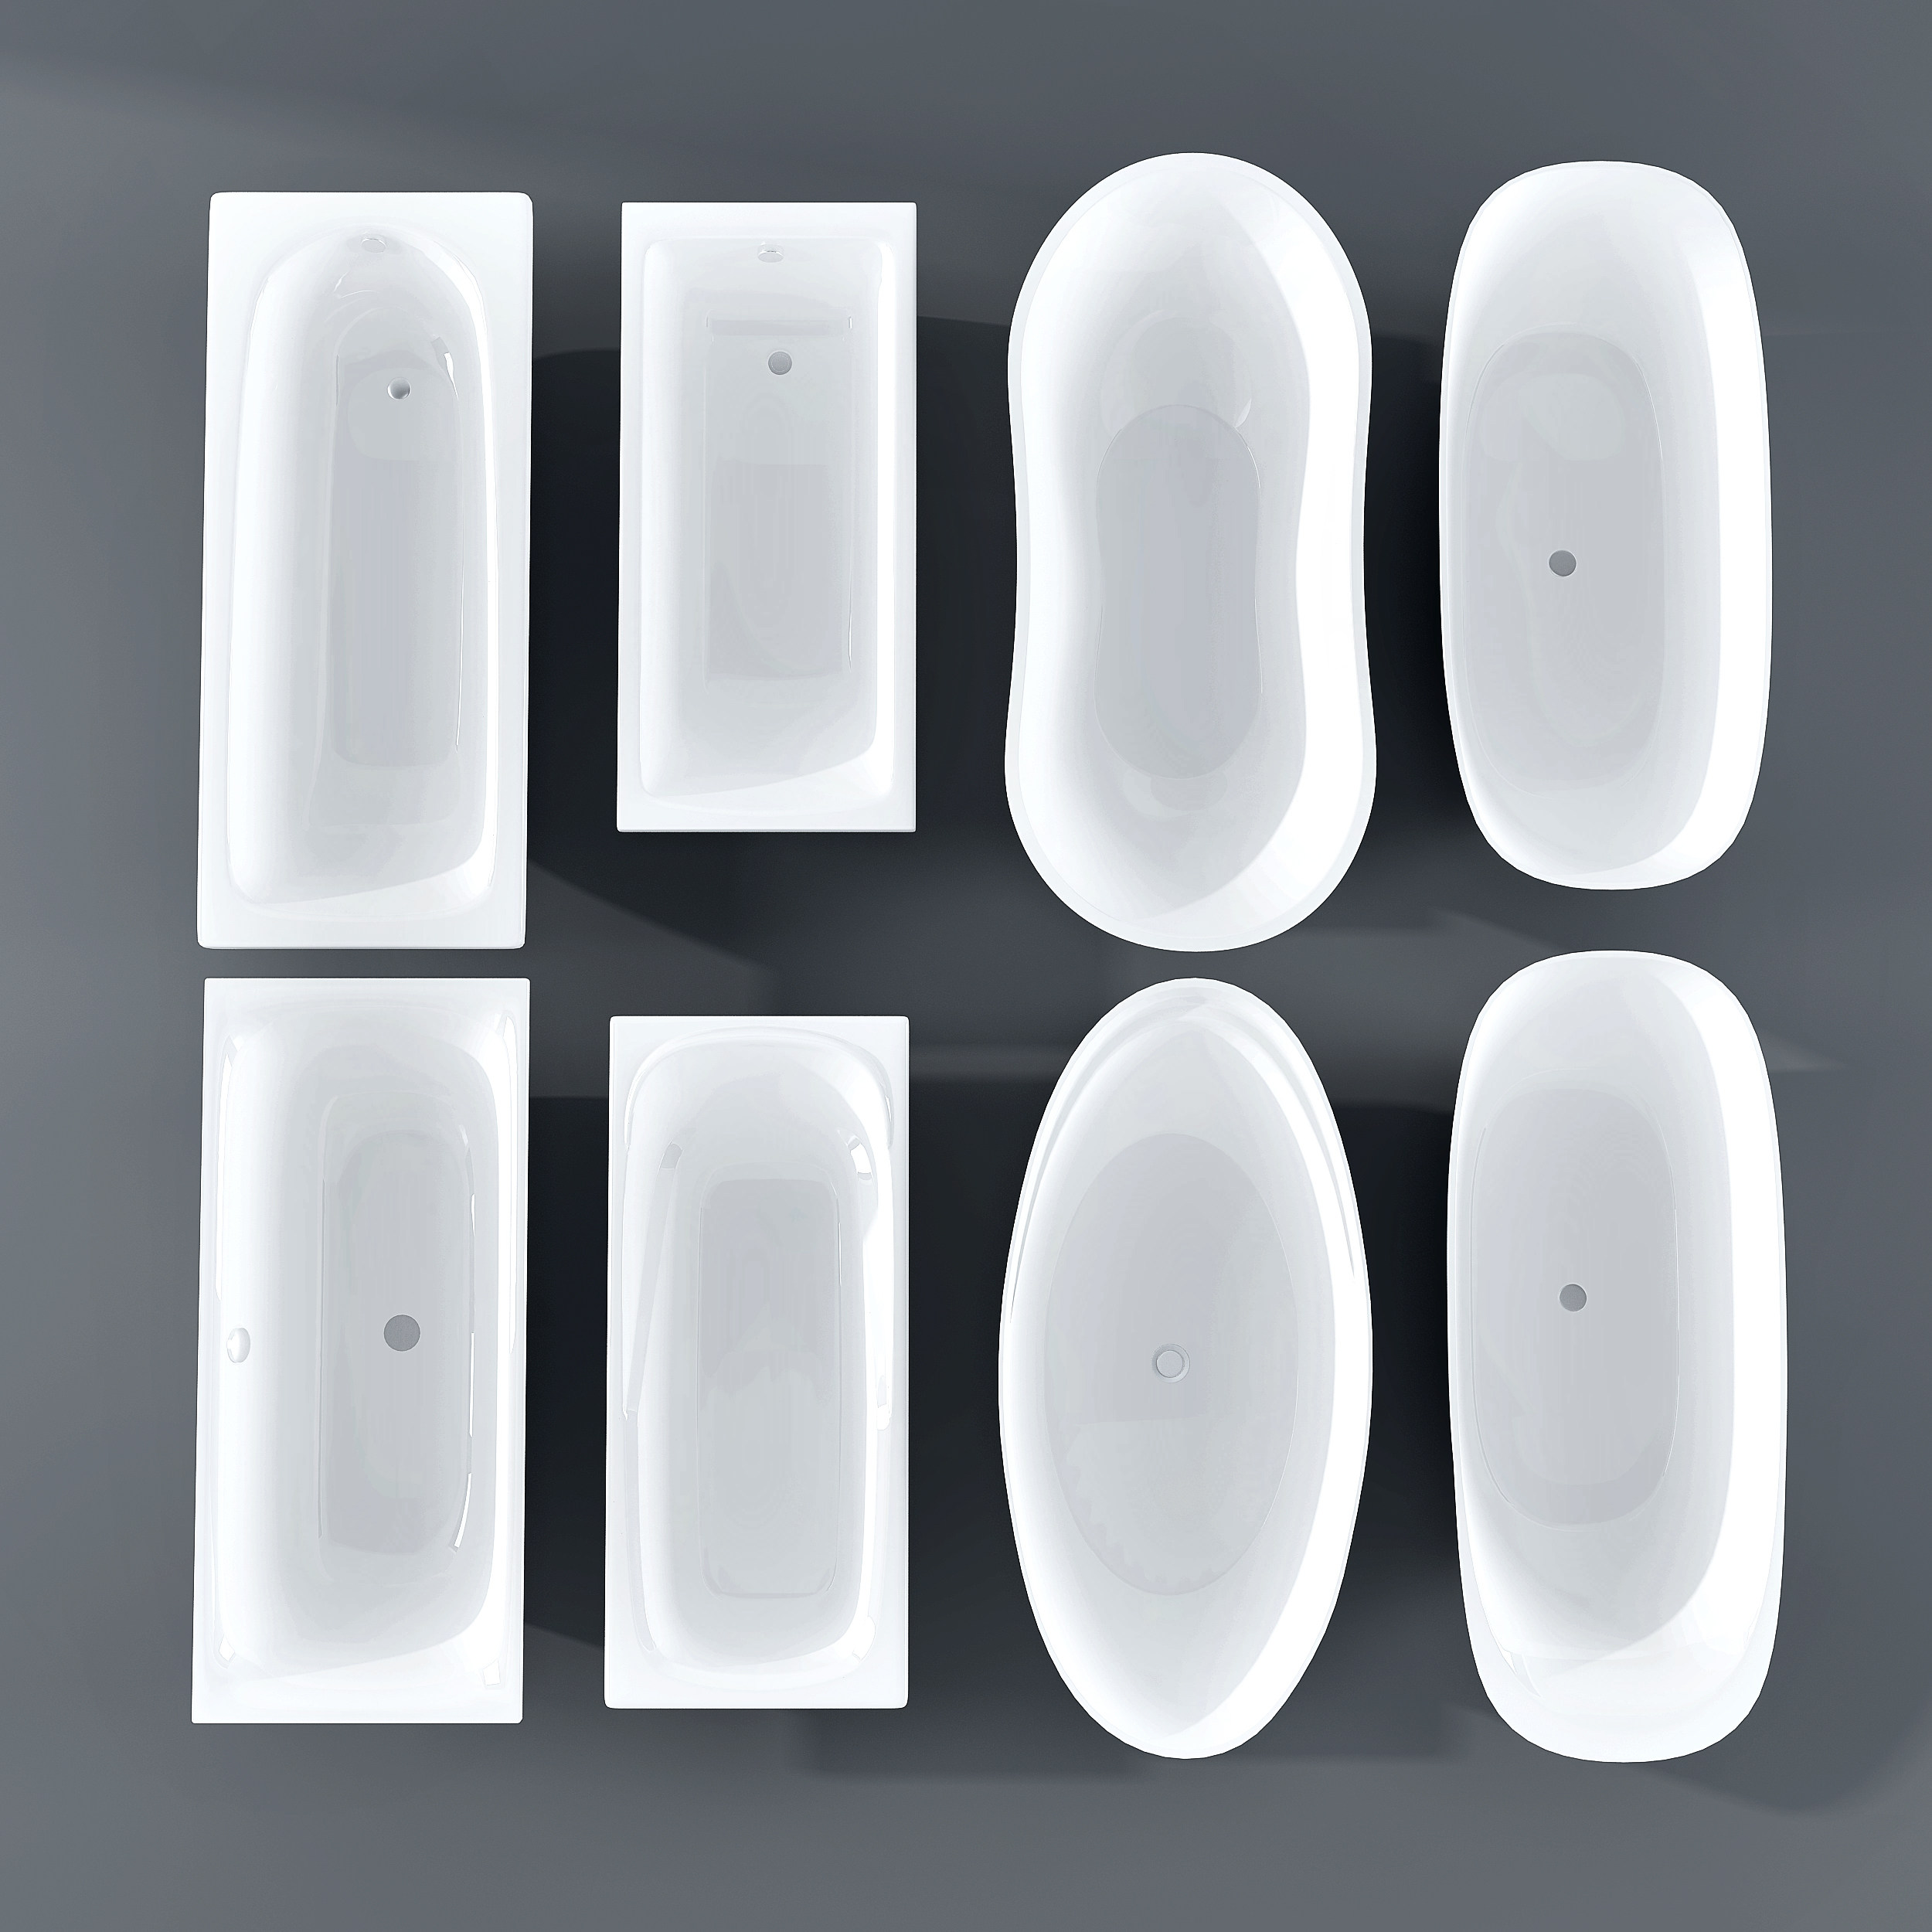 现代嵌入式浴缸组合3d模型下载